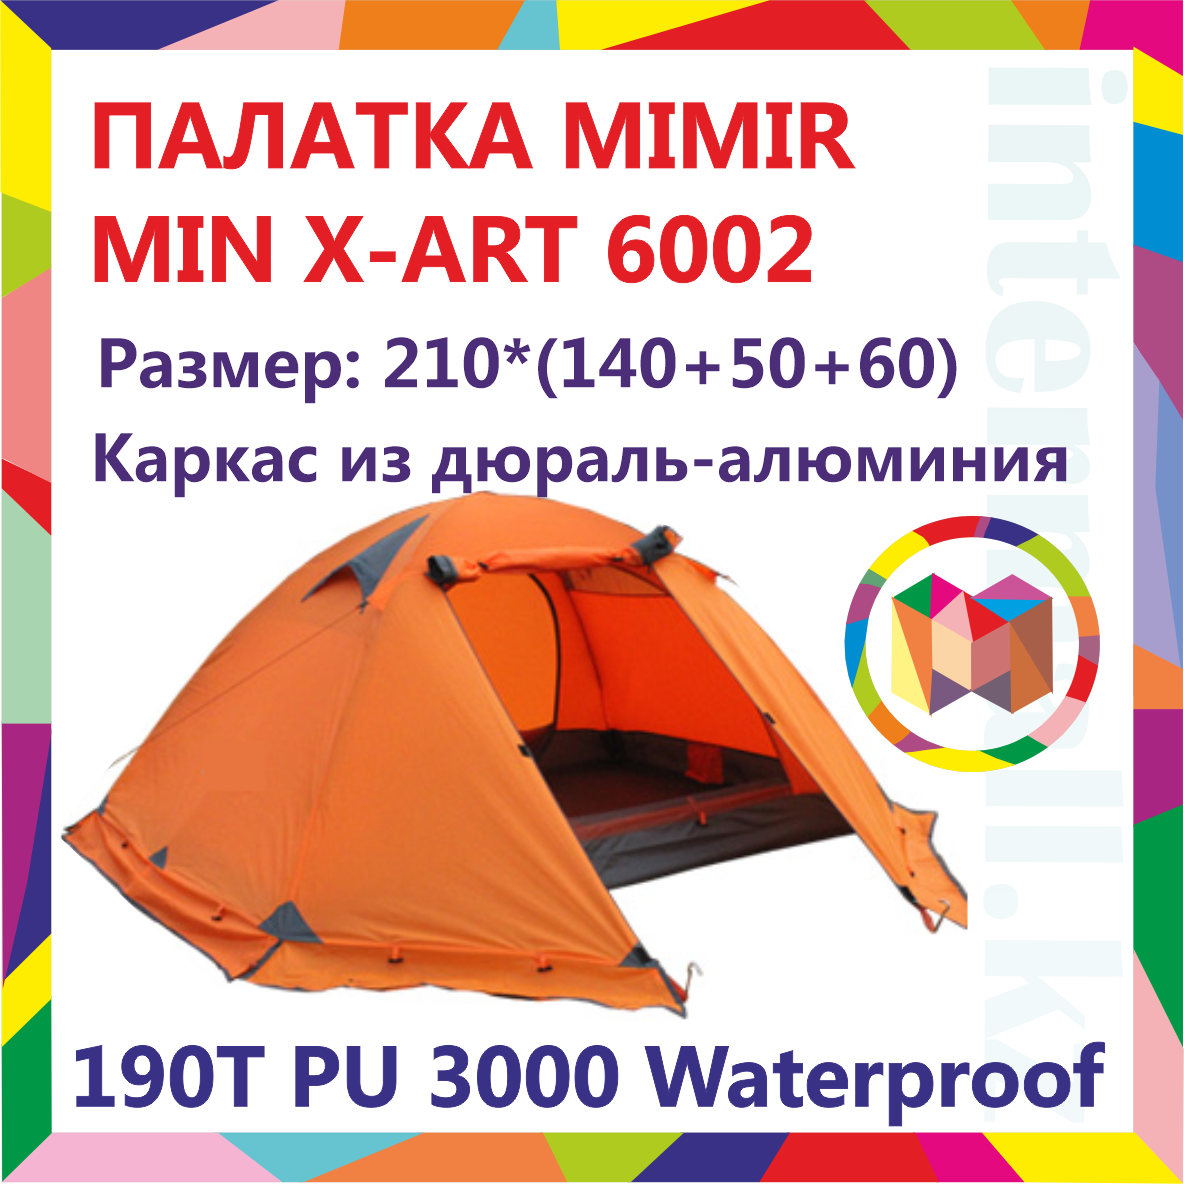 Двухместная палатка, водонепроницаемая, съемный дождевик, 210*(140+50+60)см , MIMIR MIN X-ART 6002